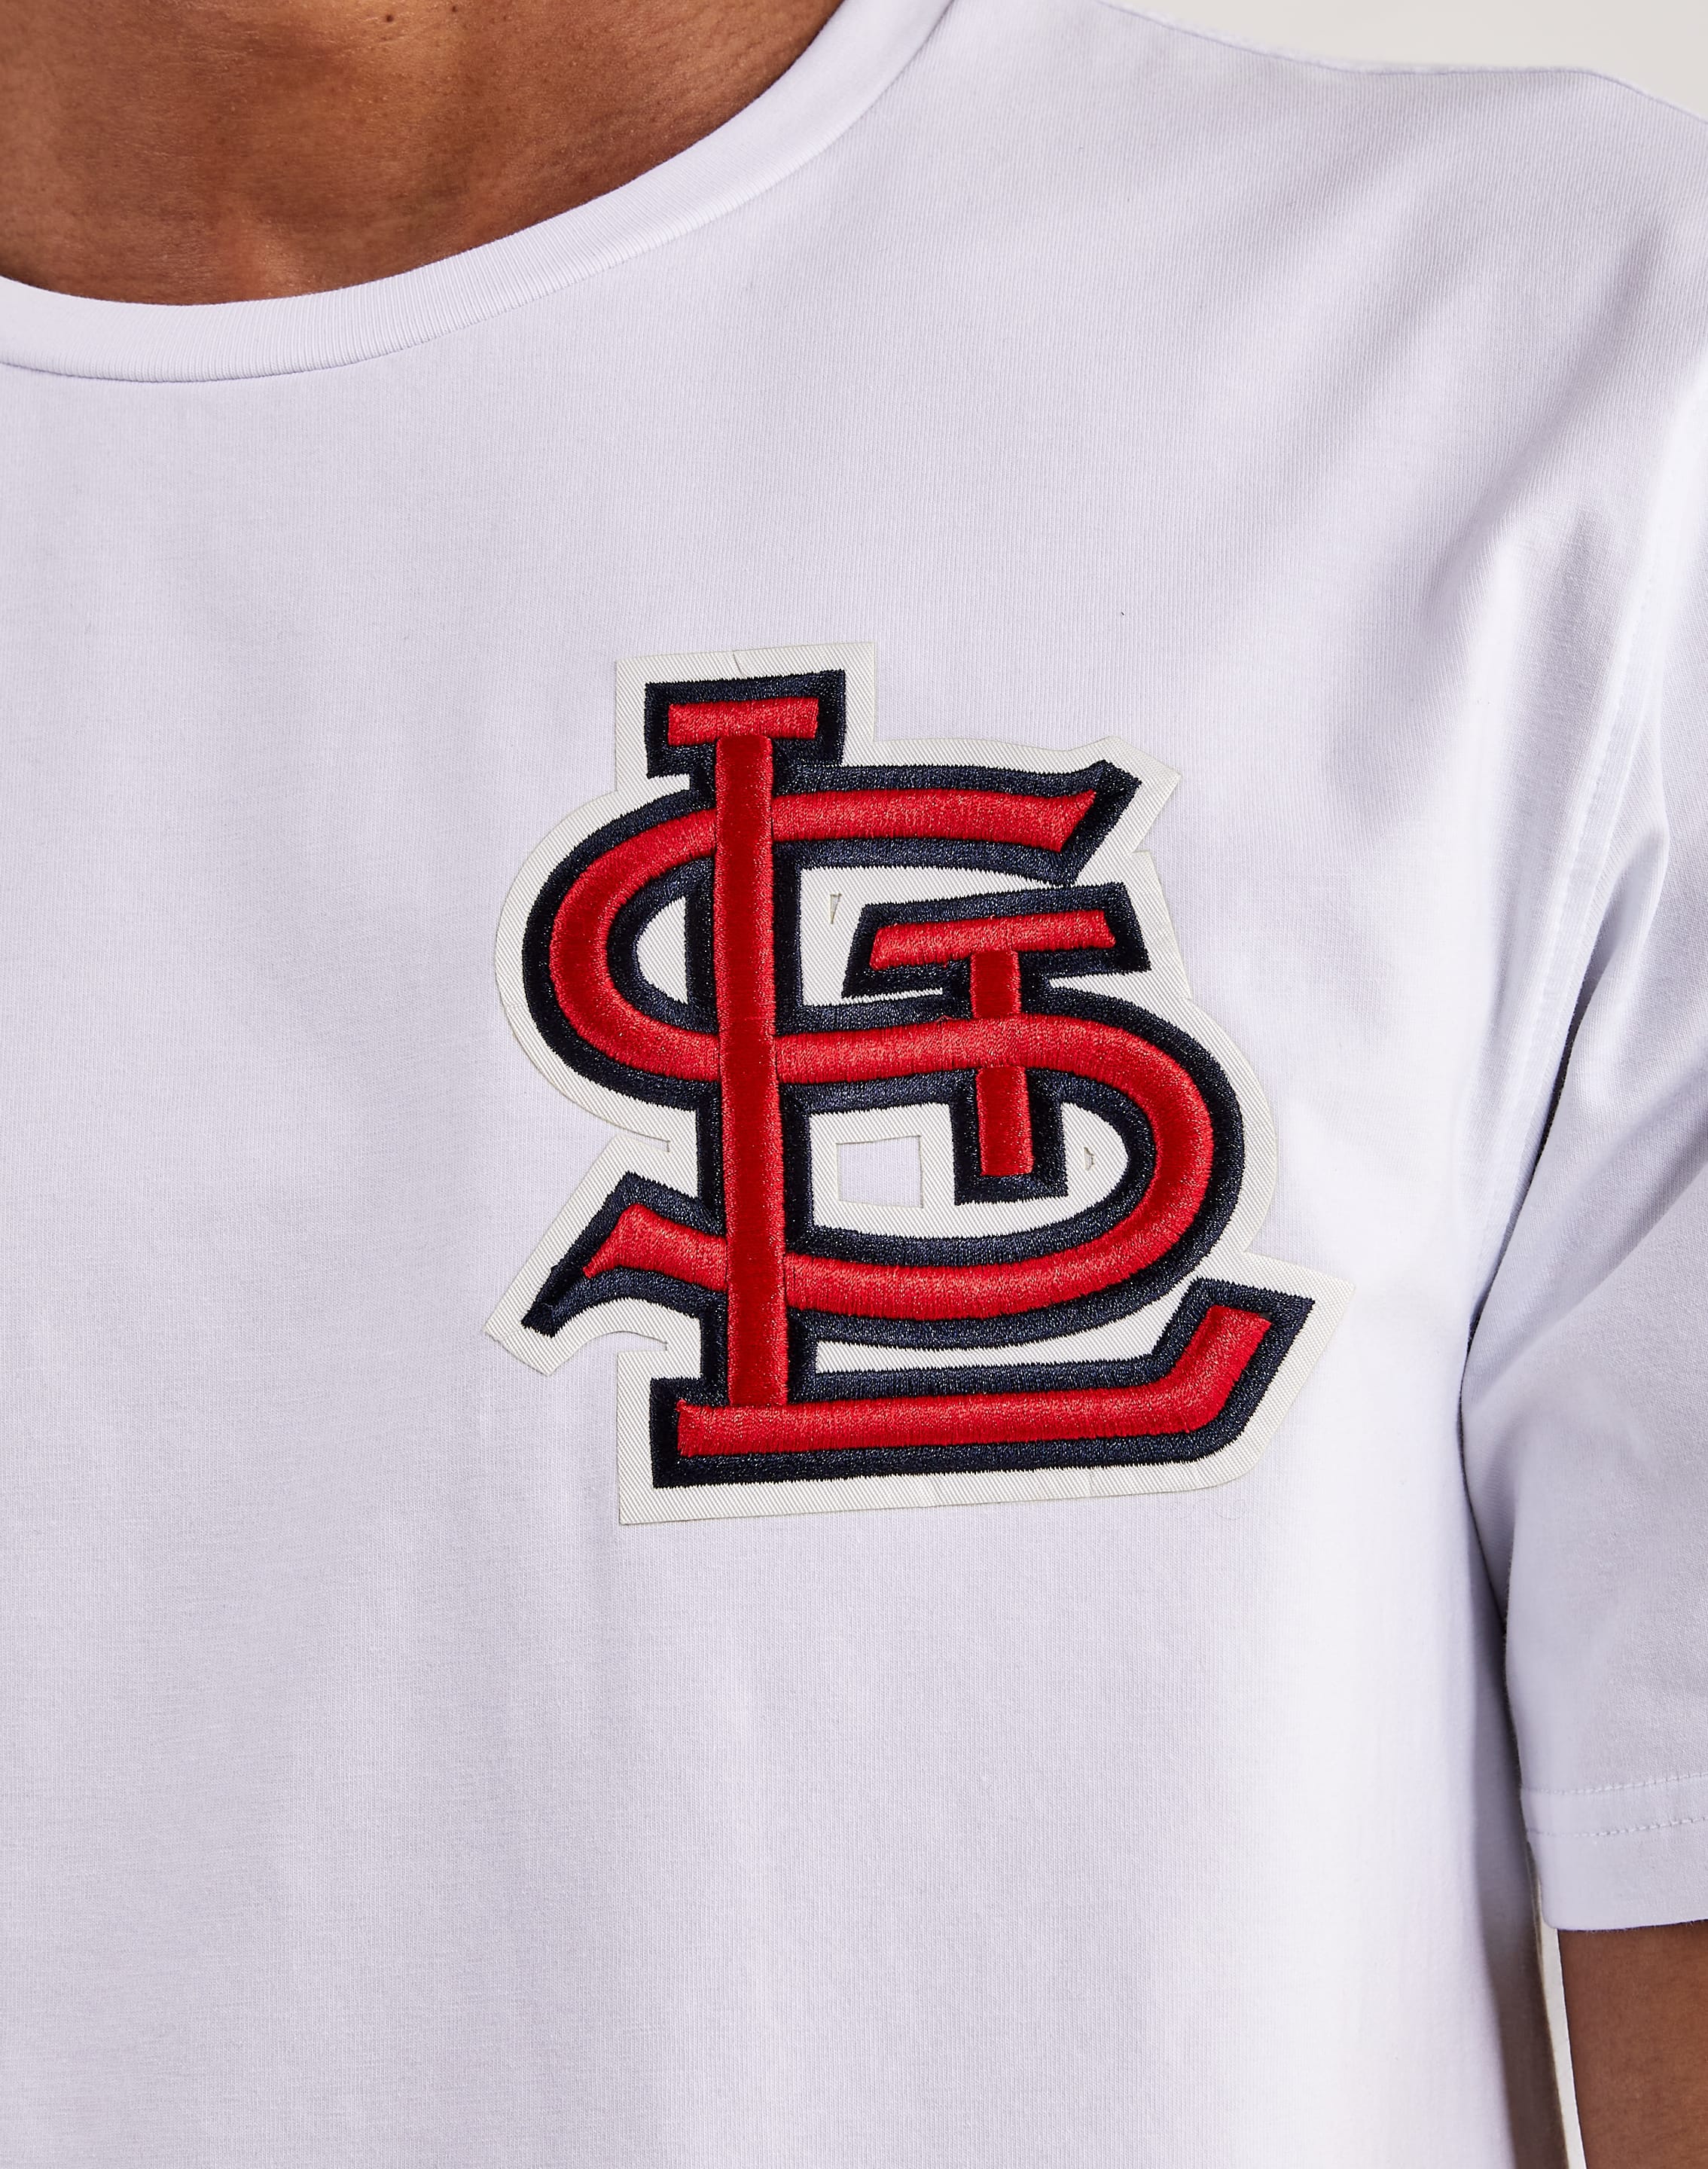 Men's Pro Standard Navy St. Louis Cardinals Team T-Shirt Size: Small